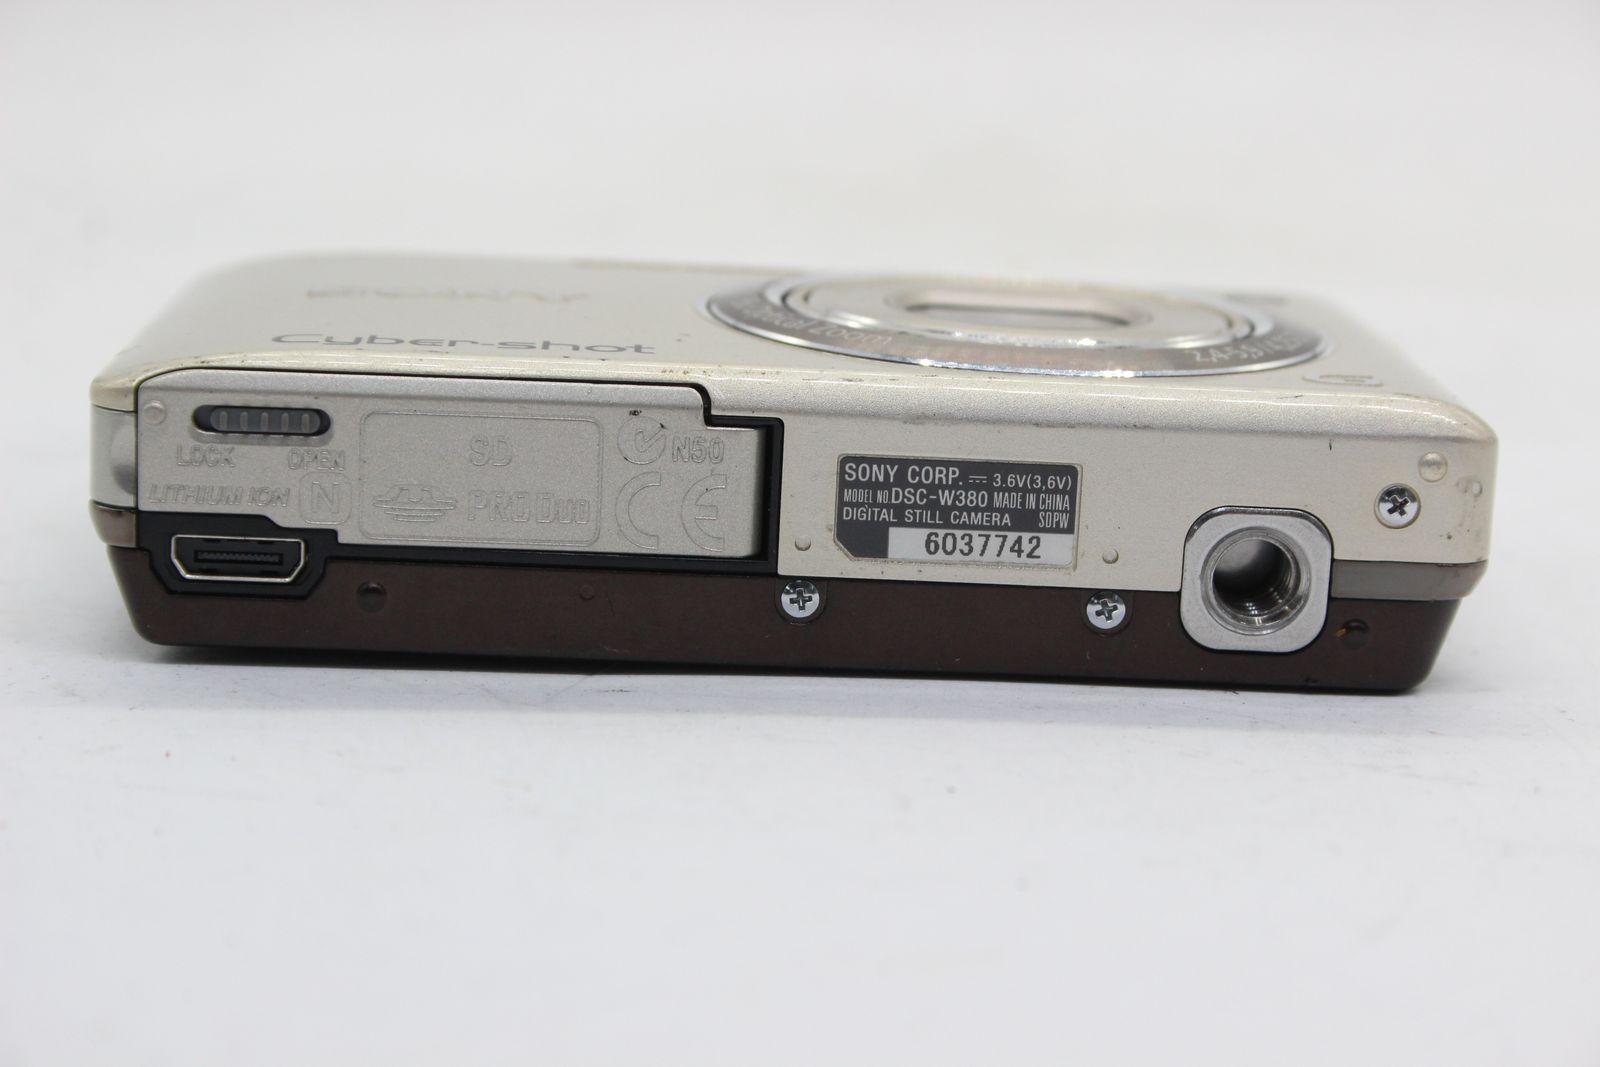 【返品保証】 ソニー SONY Cyber-shot DSC-W380 5x バッテリー付き コンパクトデジタルカメラ  s5437